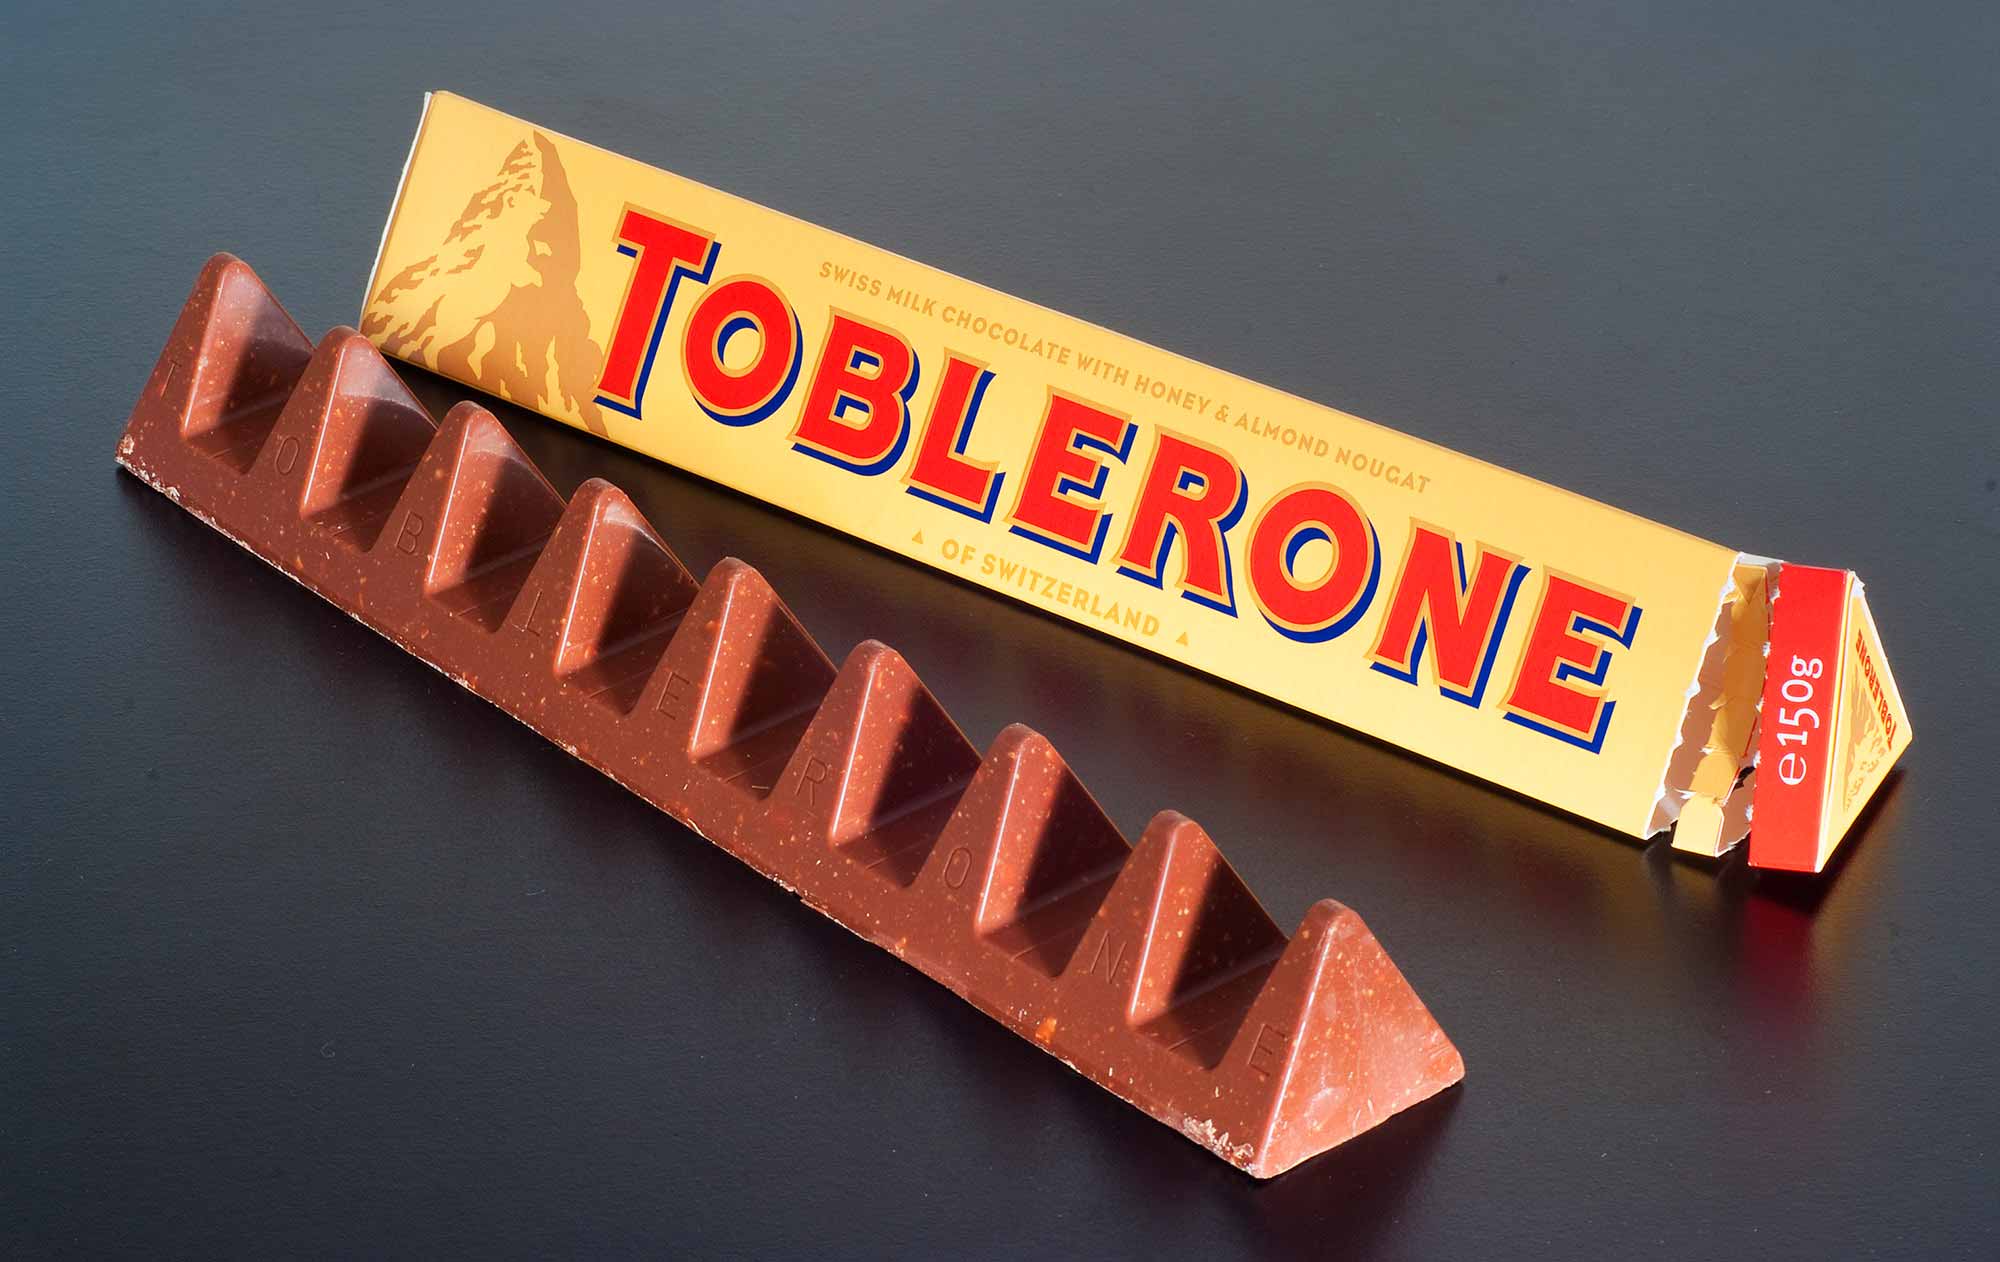 Símbolo secreto descoberto no chocolate Toblerone por menina de 10 anos